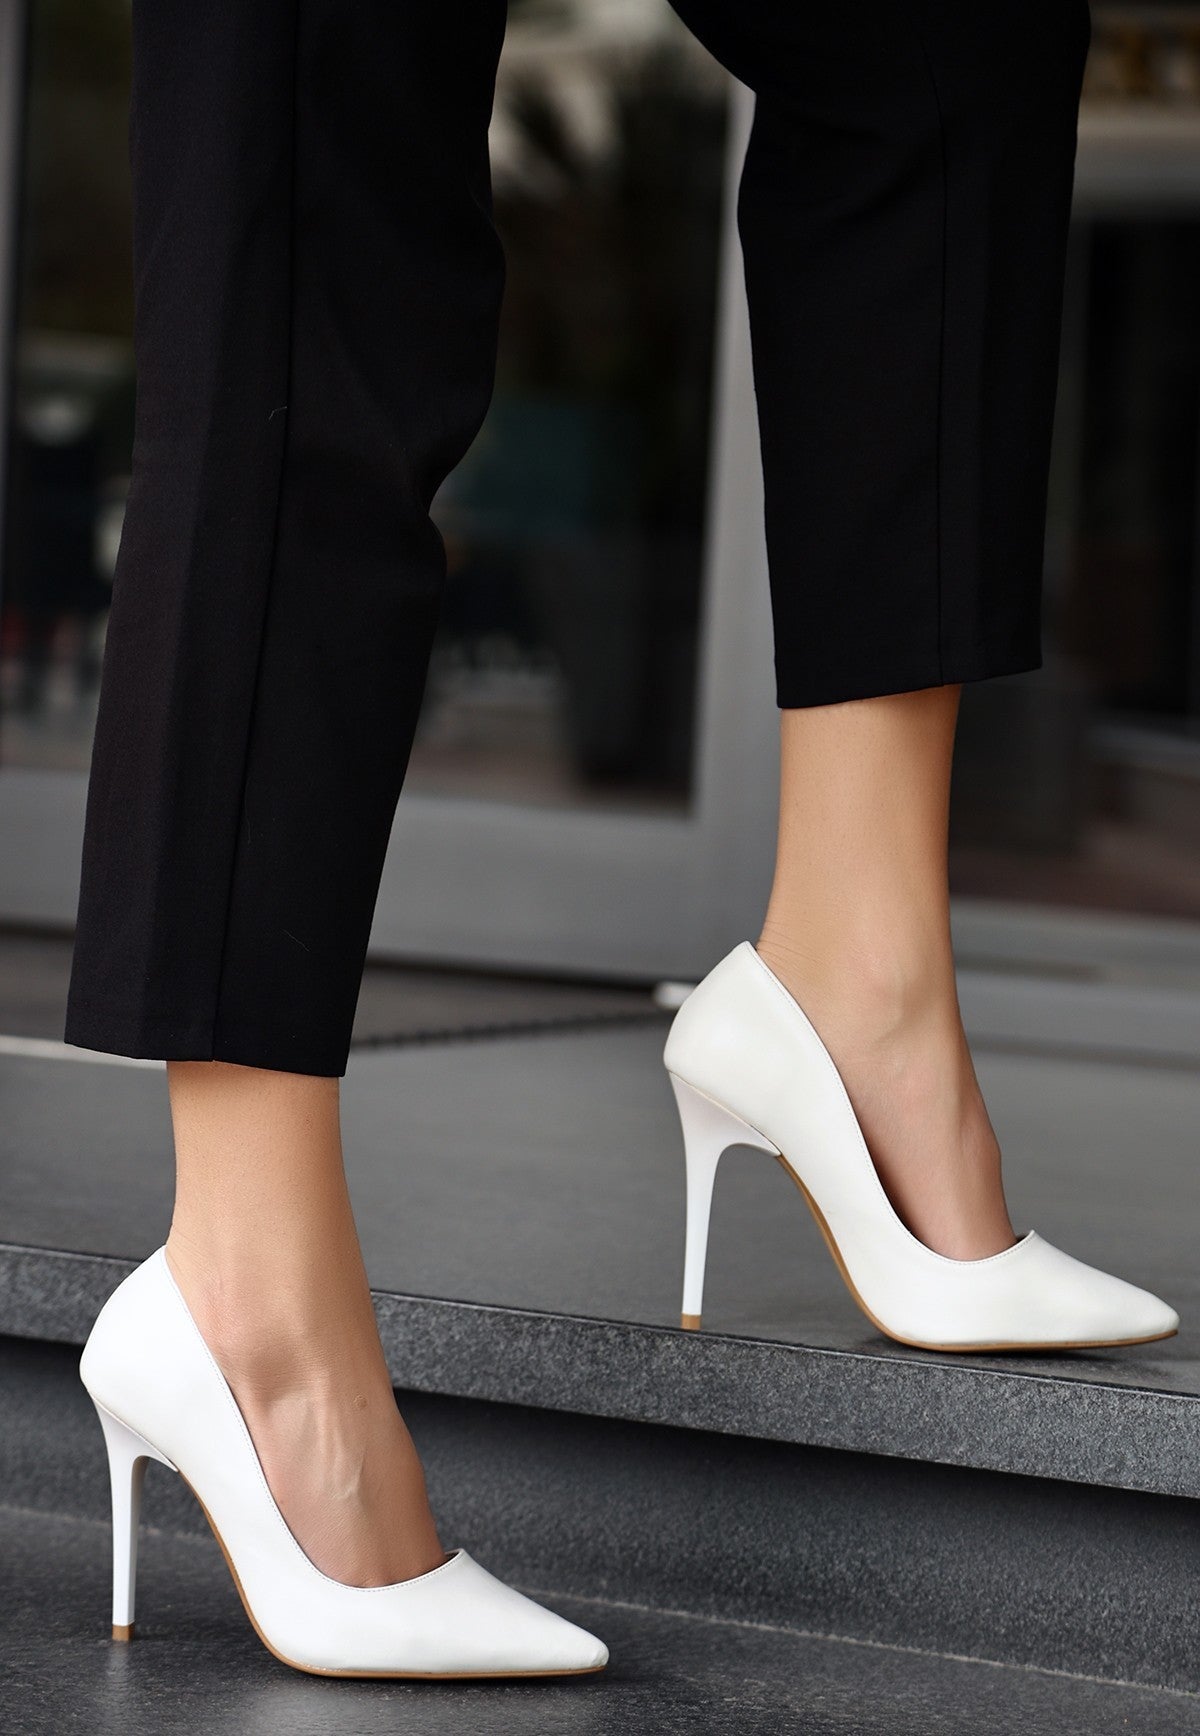 Women's Hillar White Skin Stiletto Shoes - STREETMODE ™